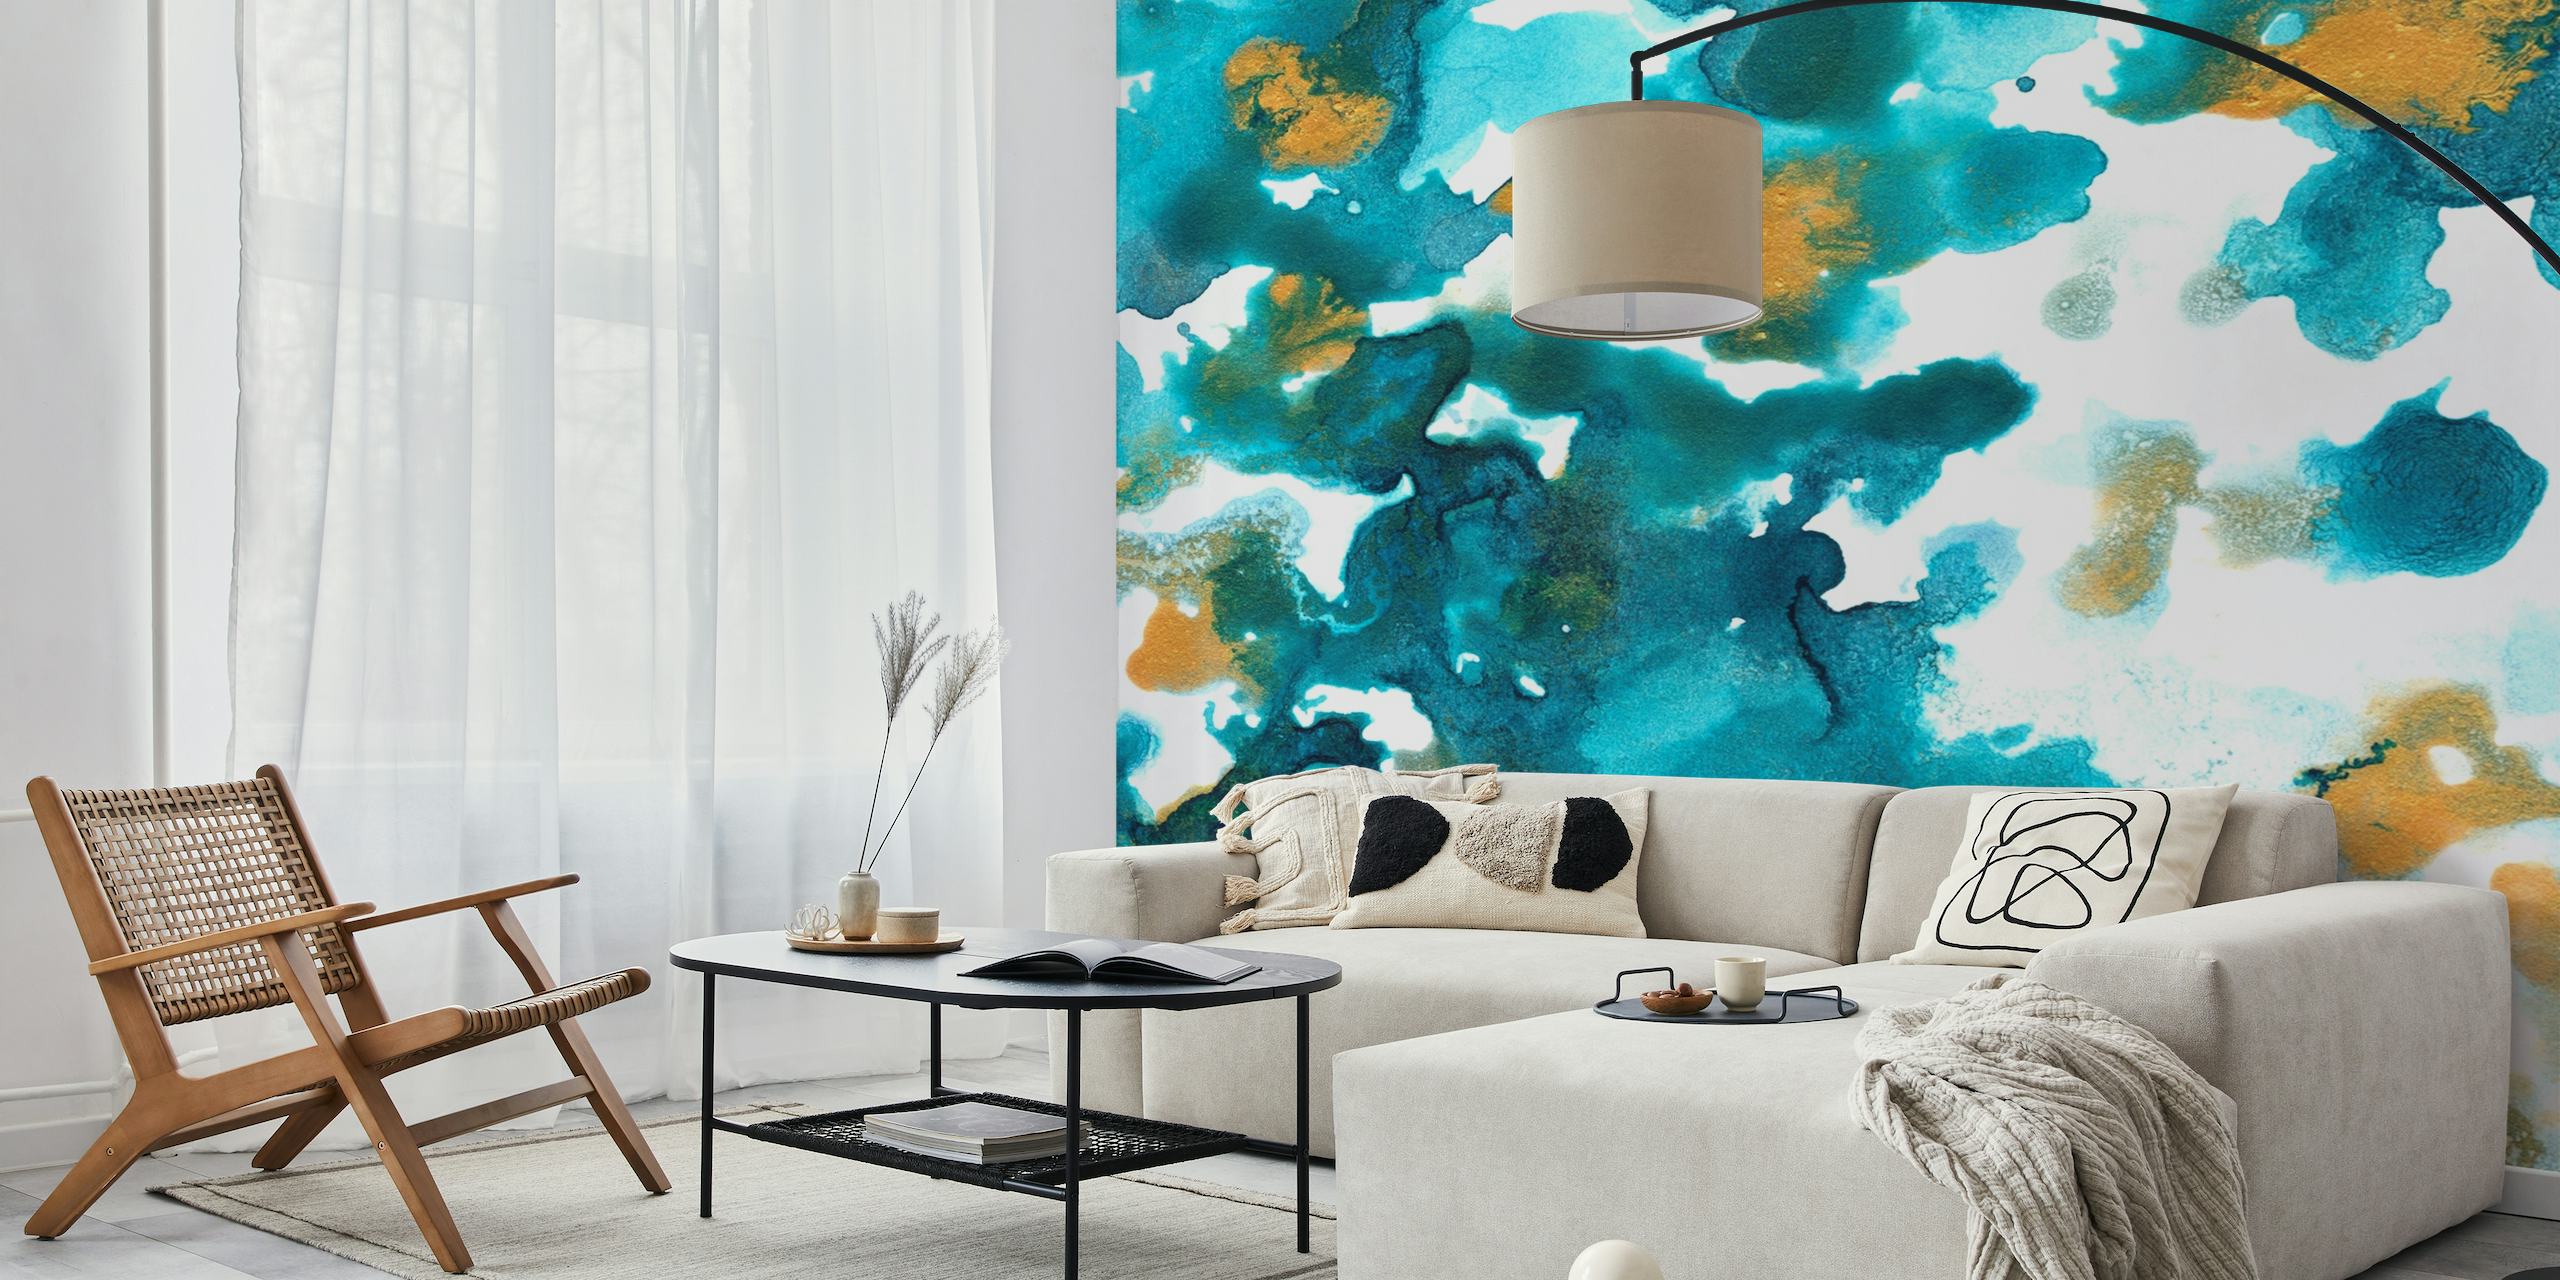 Zidna slika apstraktne vode, plavozelene i zlatne boje, odlikuje se fluidnim umjetničkim dizajnom